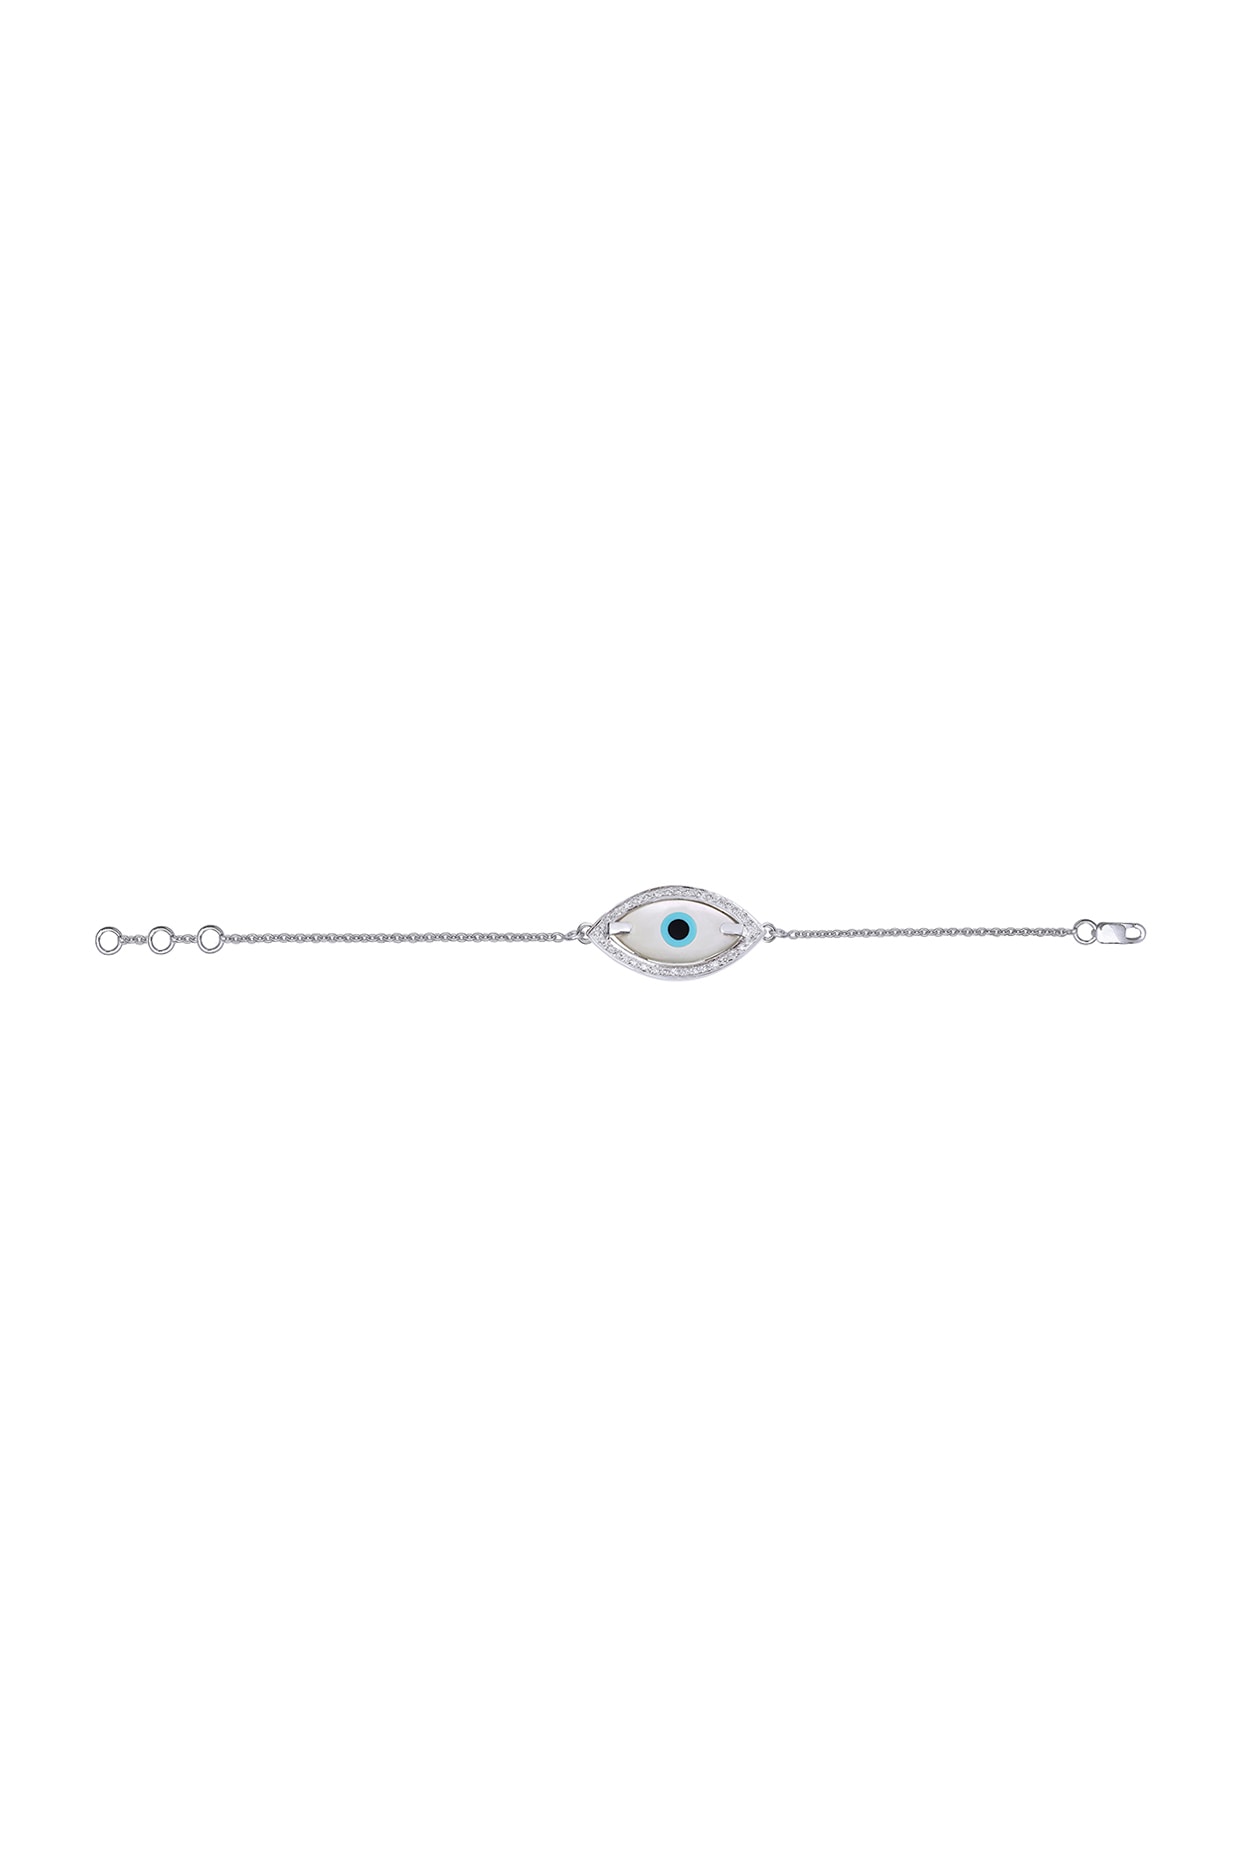 Clover Evil Eye Diamond Pearl Bracelet | KAJ Fine Jewellery | Le Mill 6 In / White